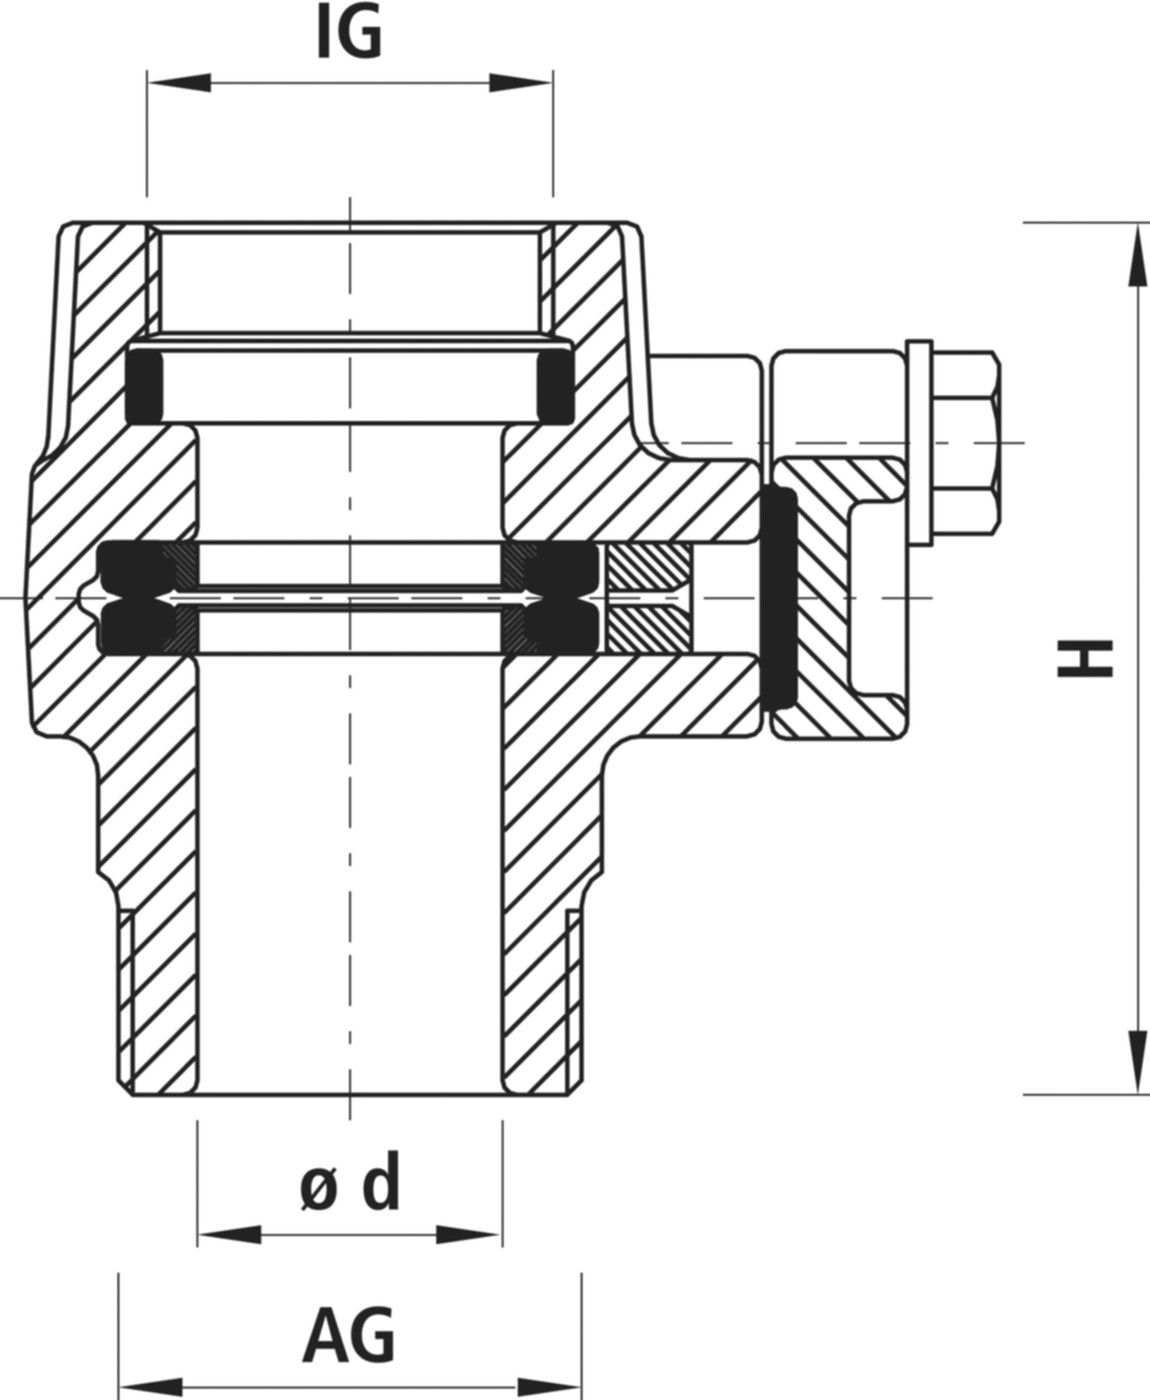 Einschraub-Anbohrsperre IG/AG 3720 1 1/2" - 2" - Hawle Hausanschluss- und Anbohrarmaturen